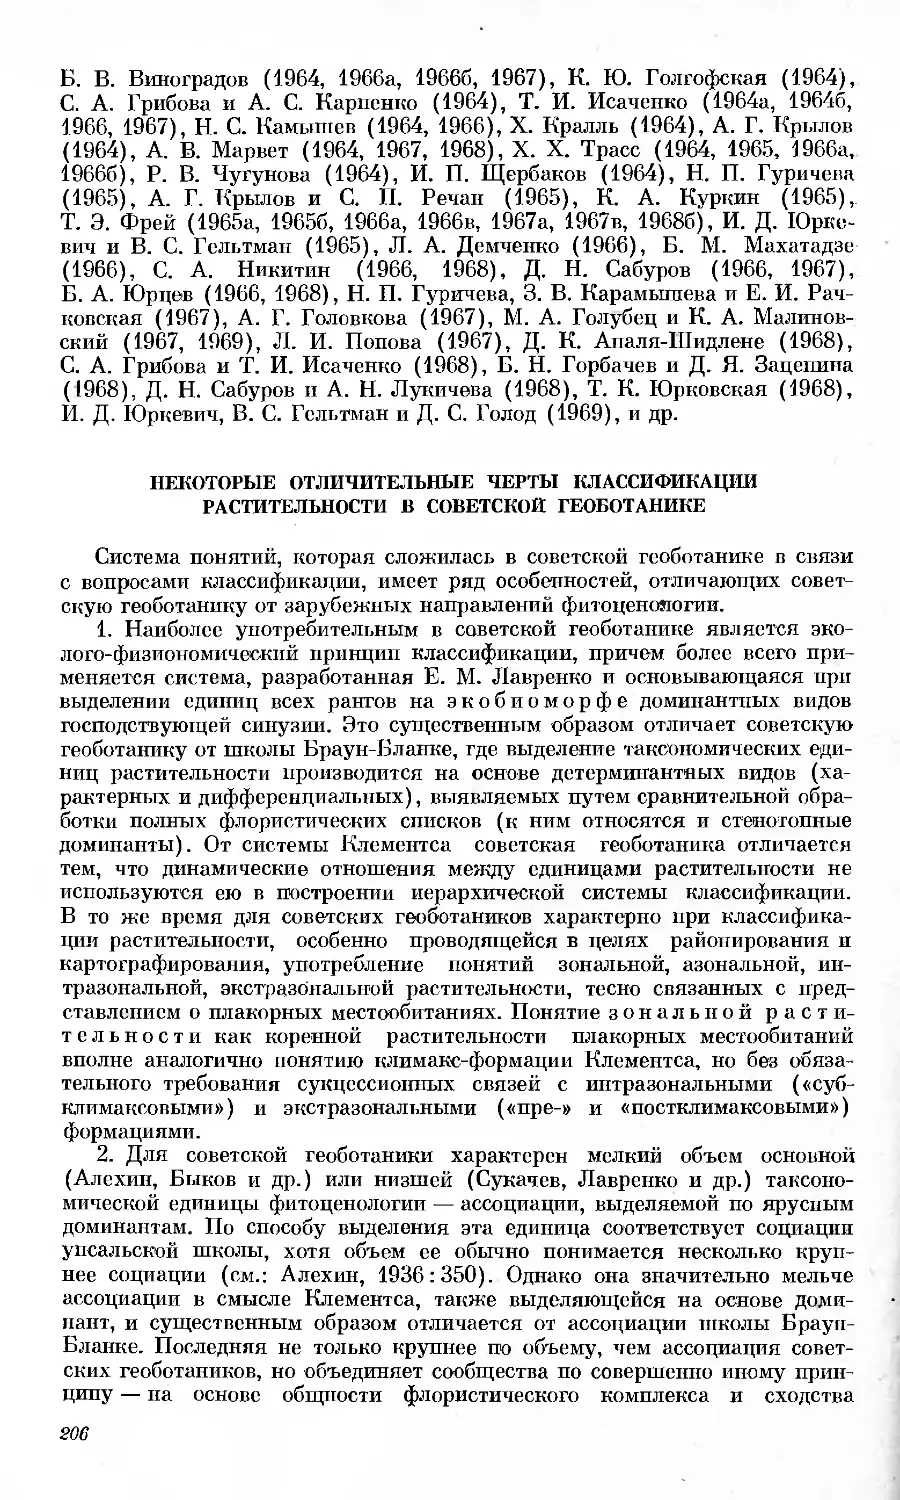 Некоторые отличительные черты классификации растительности в советской геоботанике